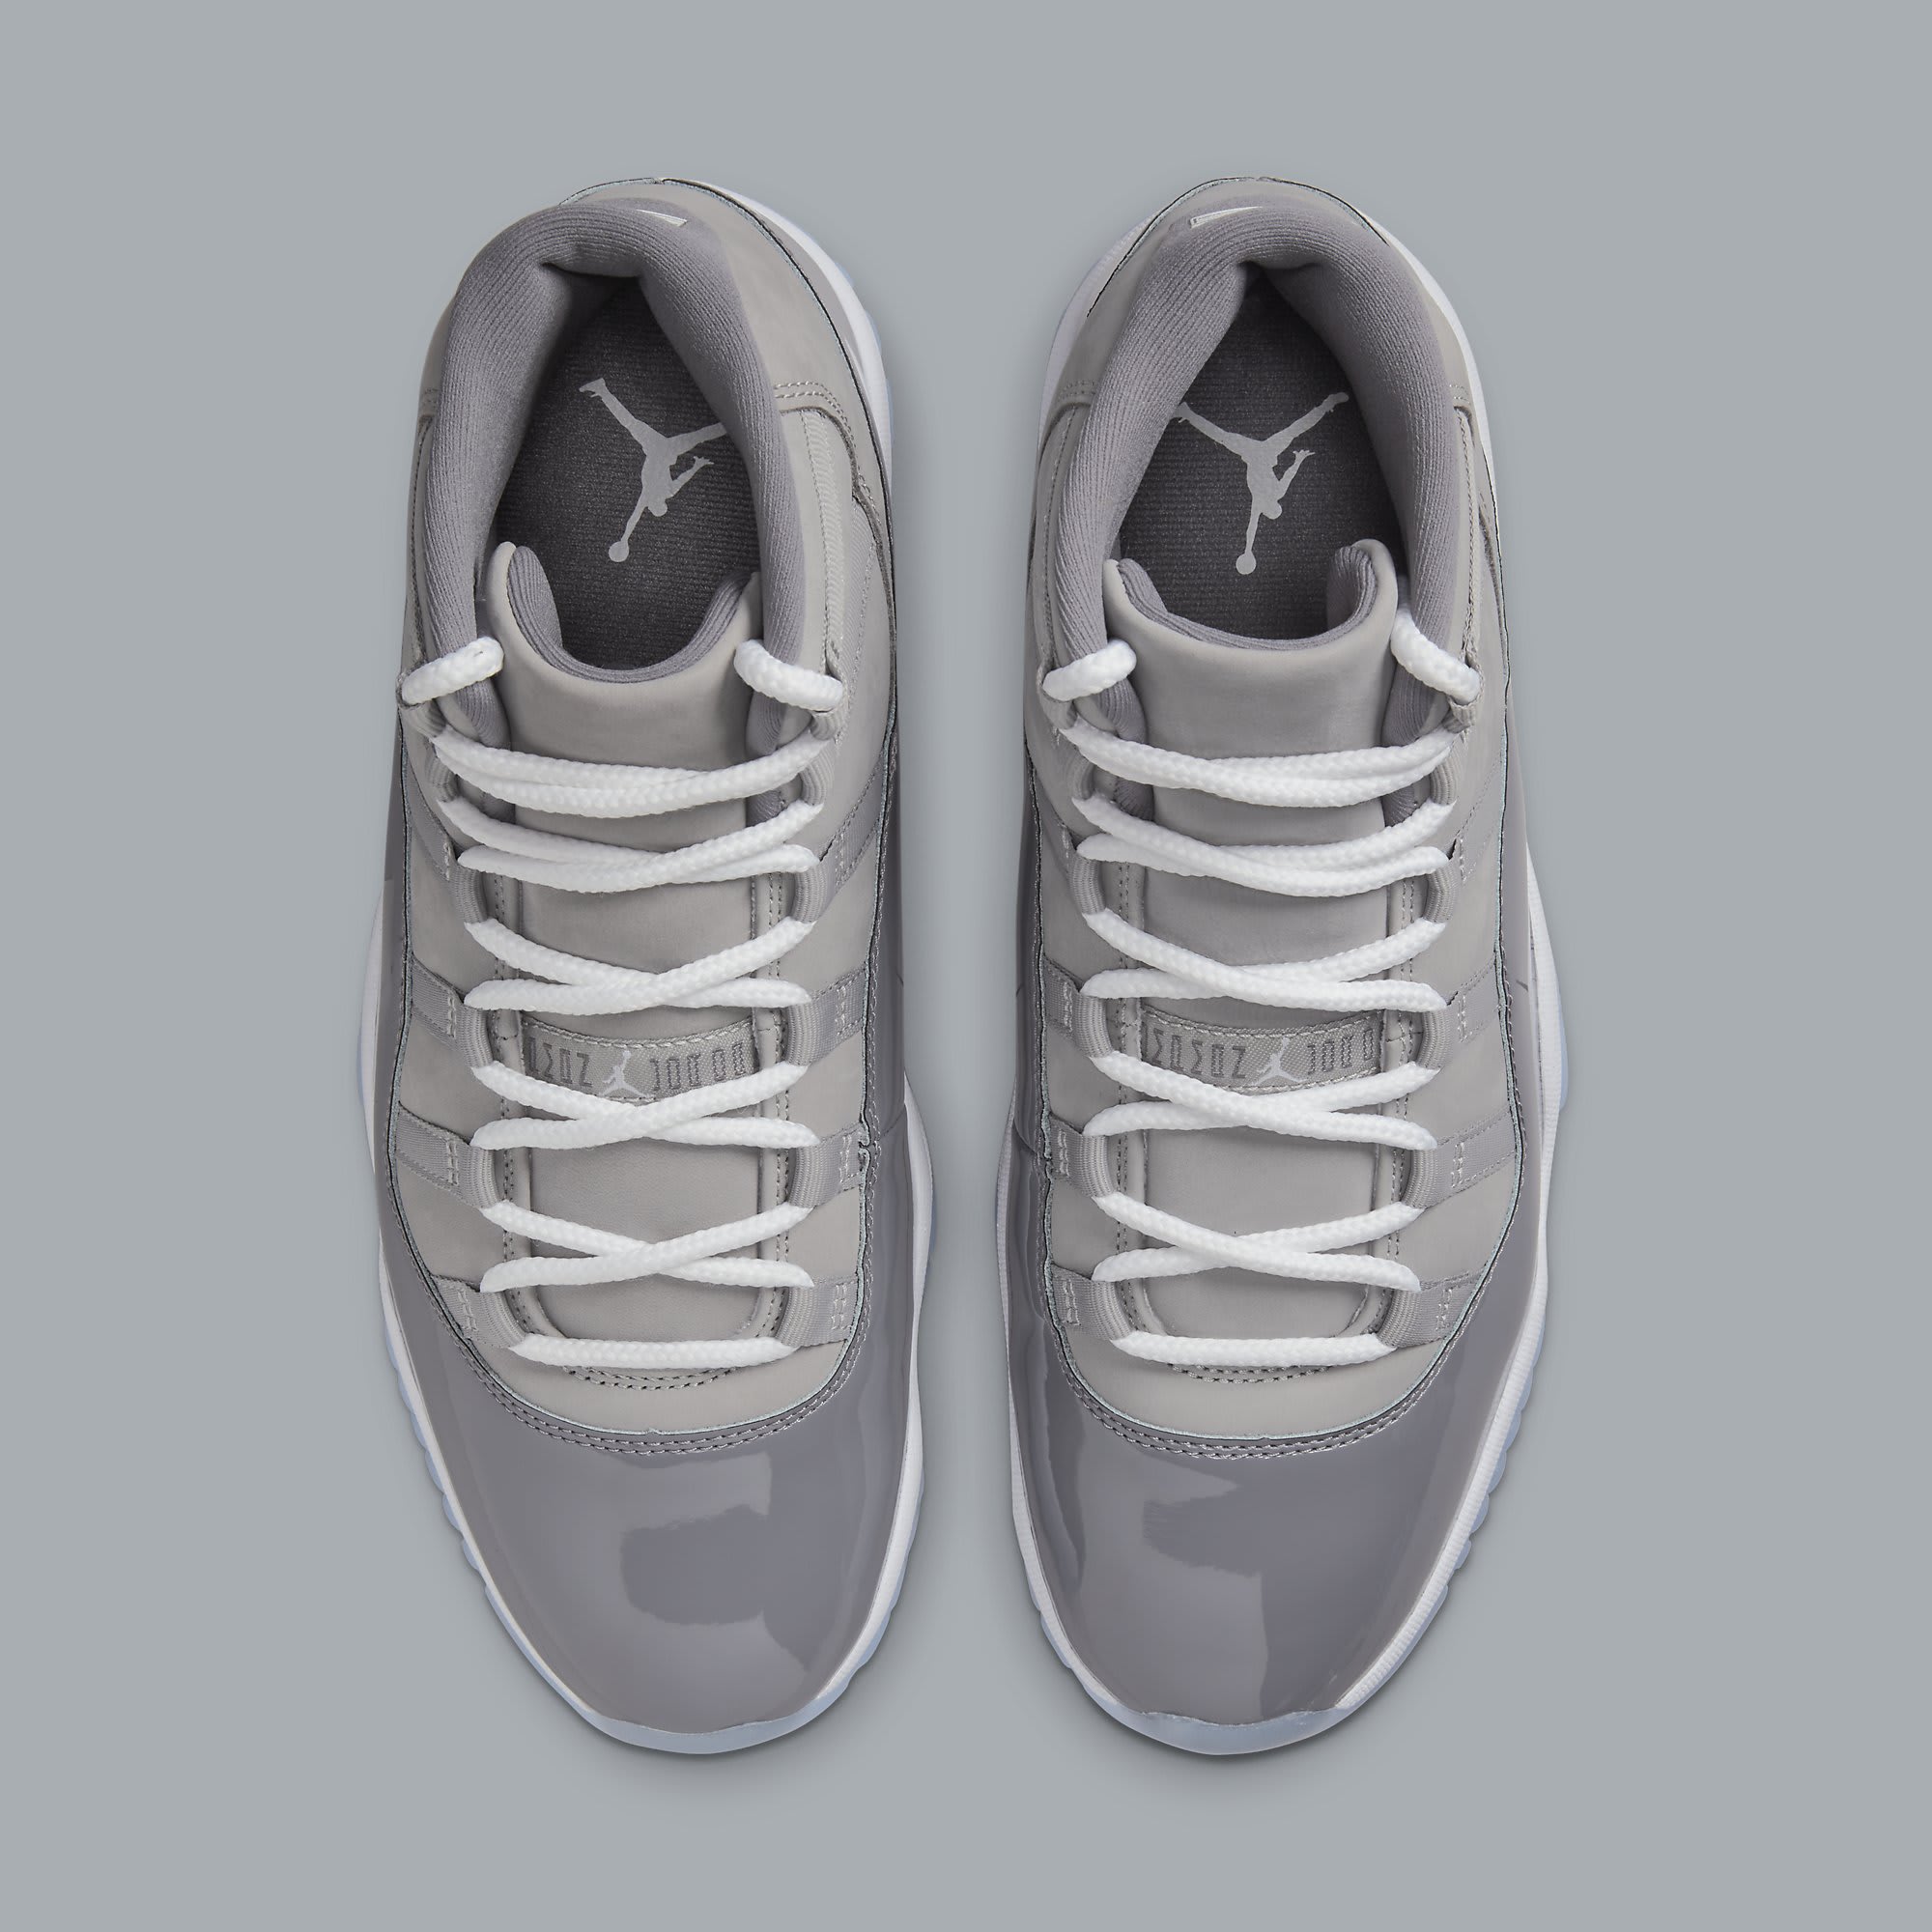 Air Jordan 11 XI Cool Grey Release Date CT8012-005 Top